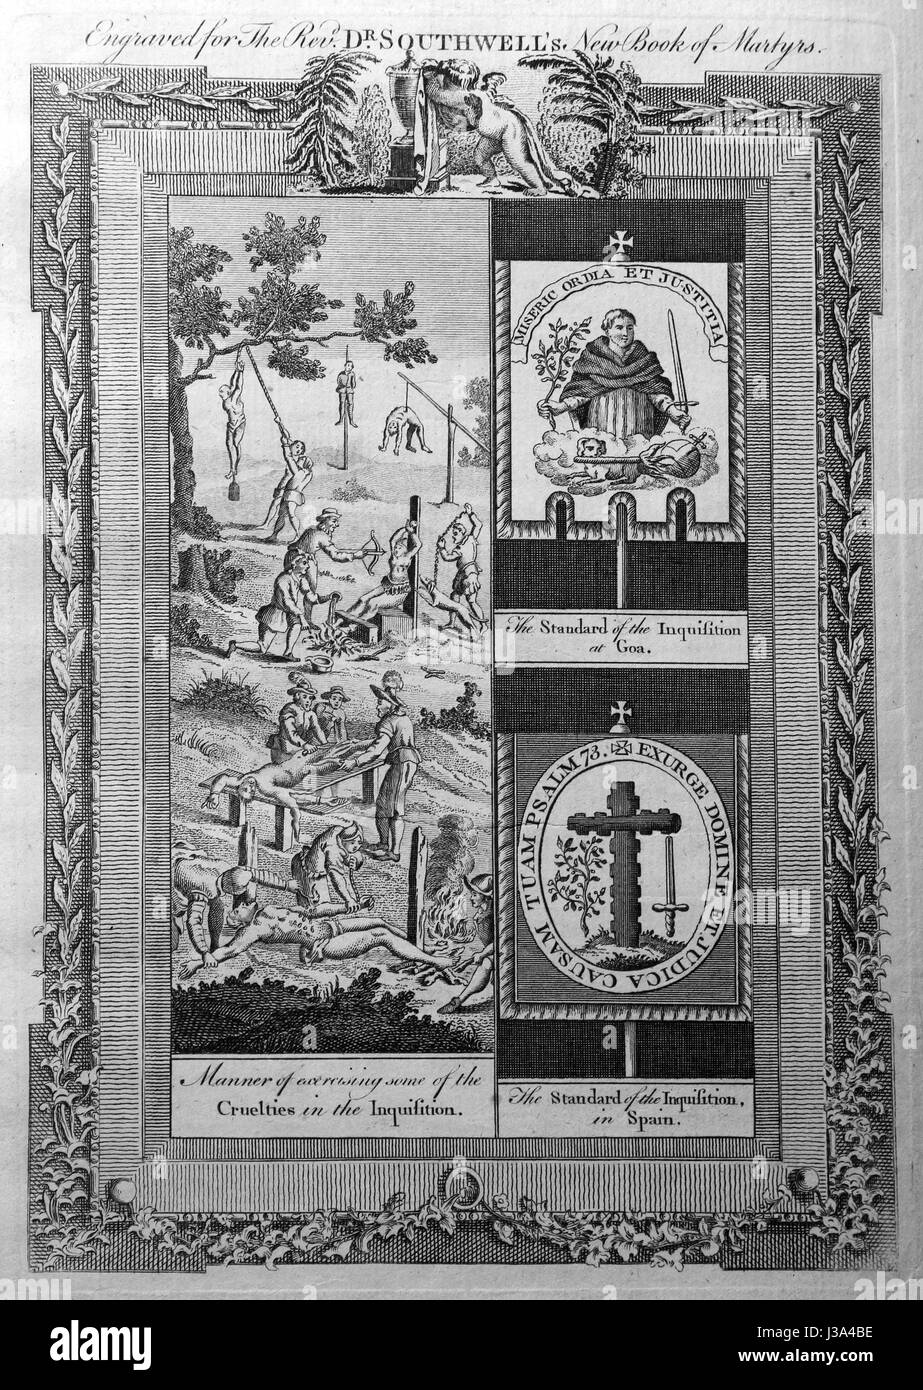 Incisione da c 1780 edizione del nuovo libro di martiri da Rev Dr Henry Southwell lld. Modo di esprimere alcune delle crudeltà nell'Inquisizione Foto Stock